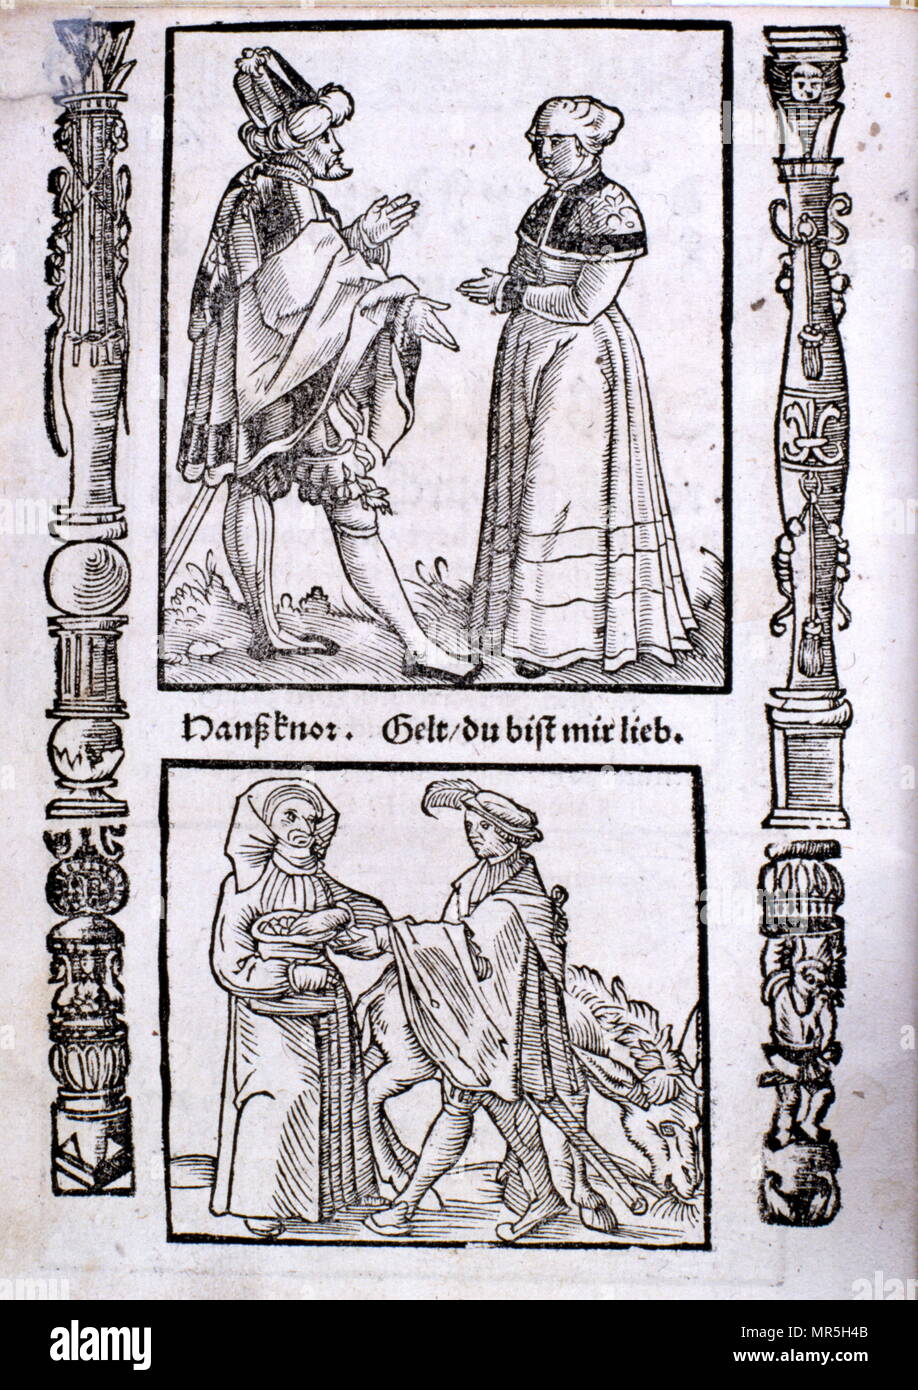 Holzschnitt Abbildung aus dem 15. Jahrhundert Ausgabe von 'Das Narrenschiff' (das Schiff der Narren), von Sebastian Brant (Brandt) (1457 - 10 Mai 1521), deutscher Humanist und Satiriker. Stockfoto